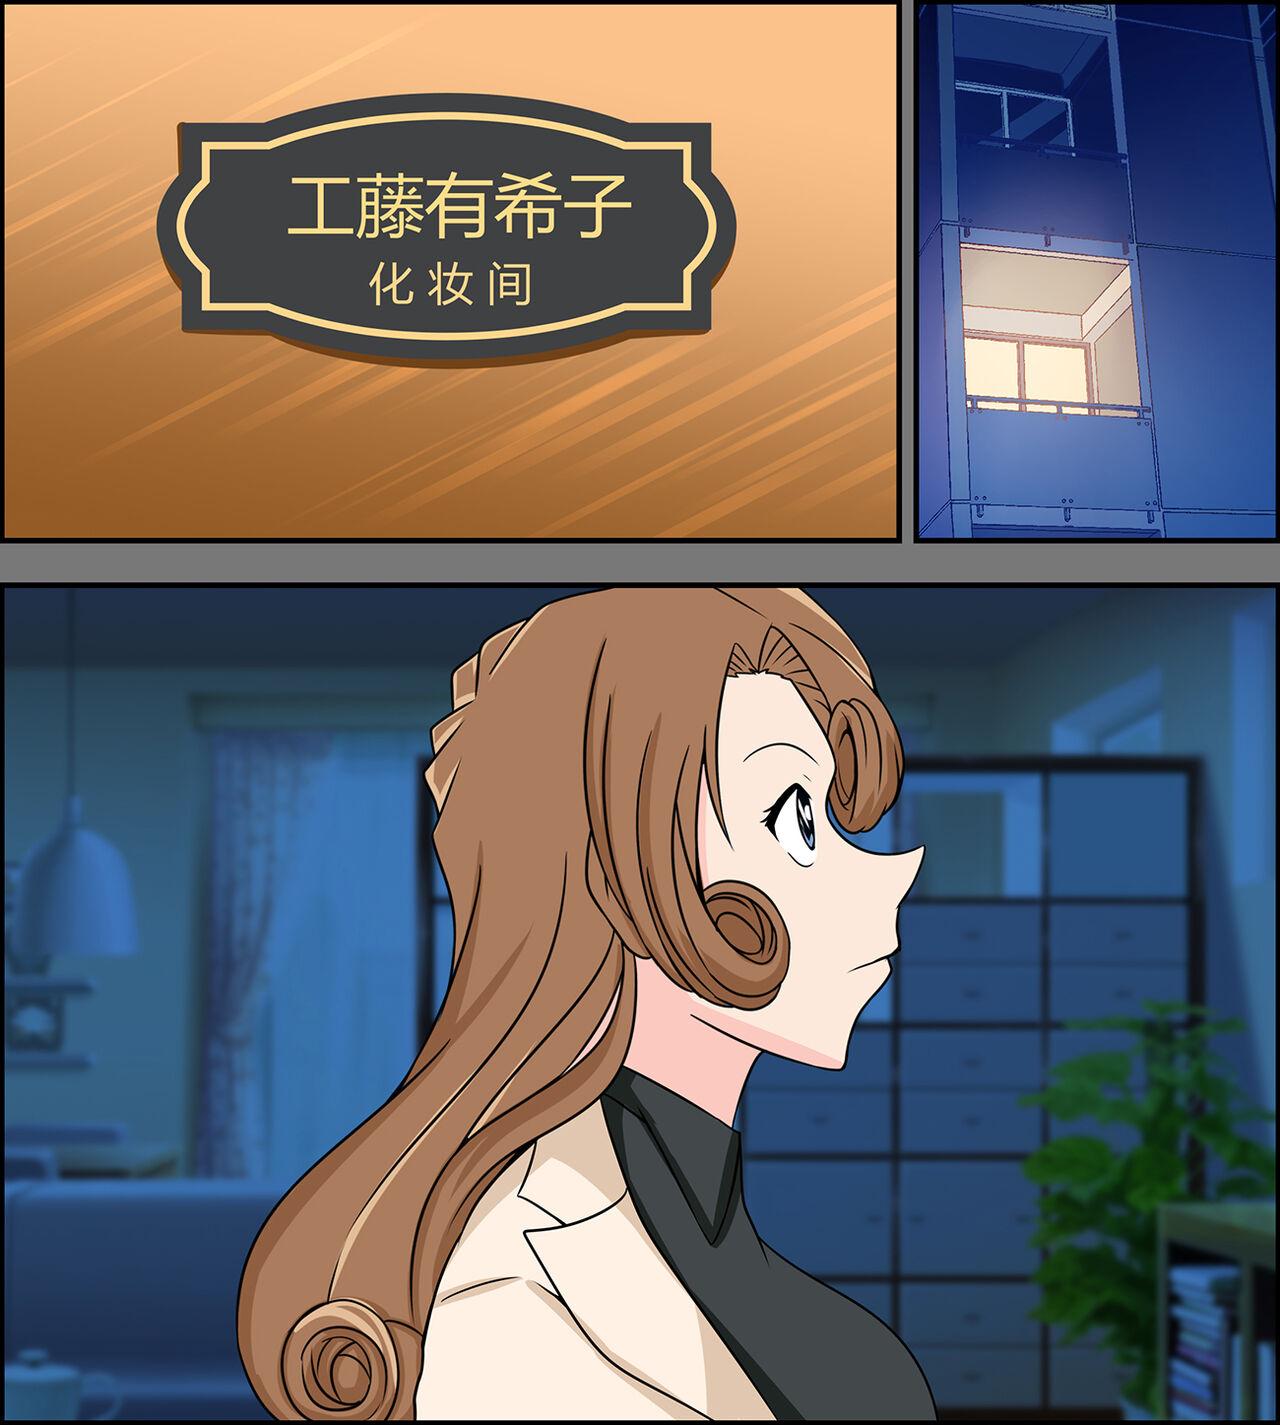 Yukiko kudo kidnapping case 1